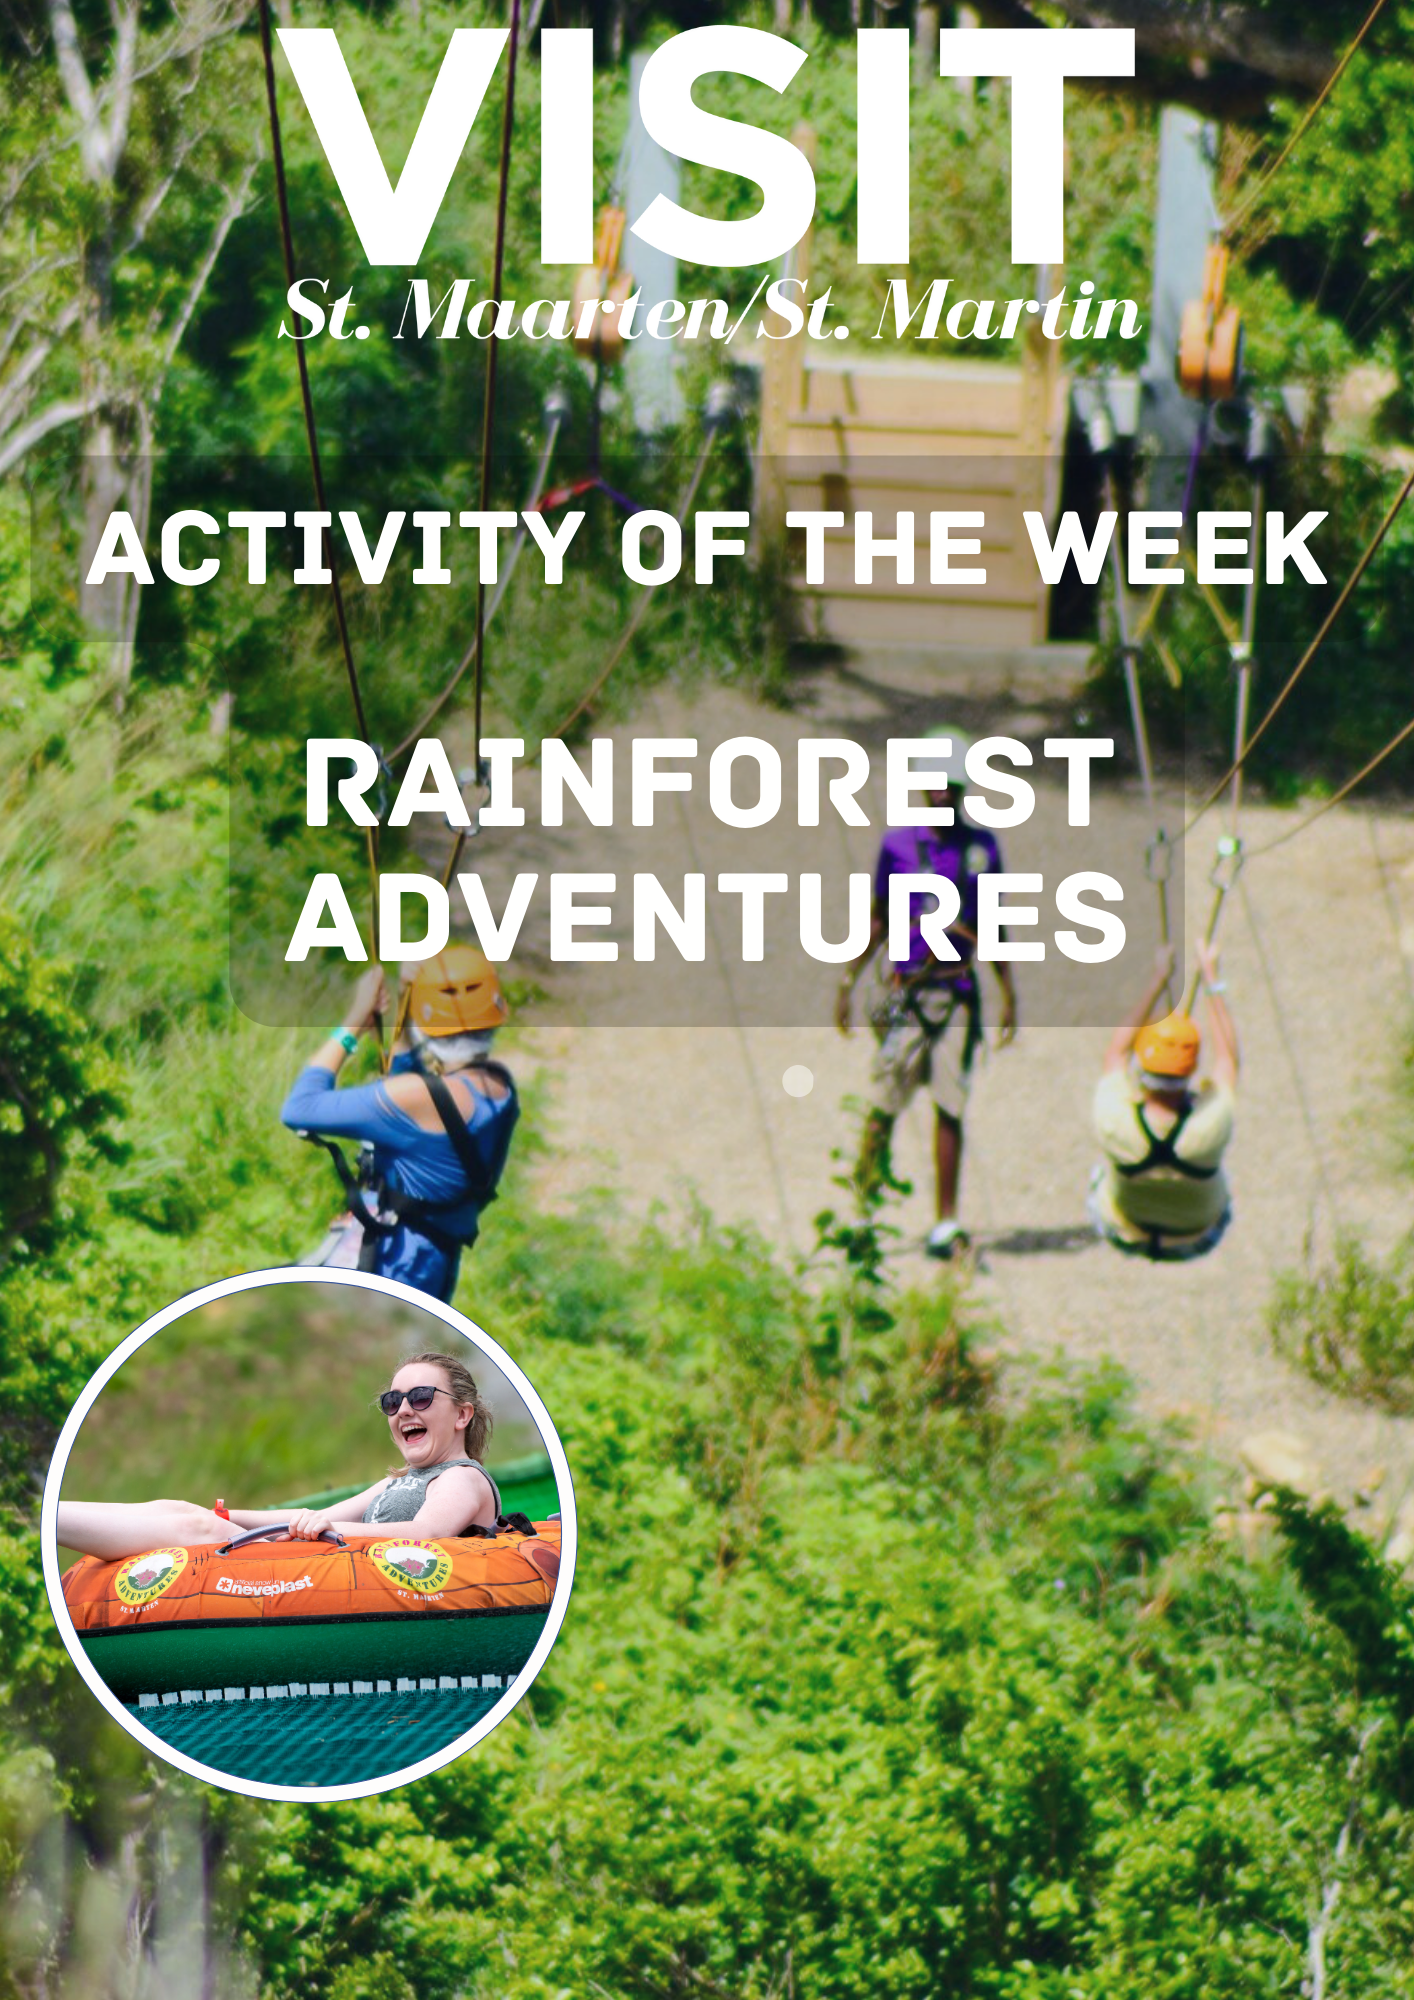 Rainforest Adventure zipline and Schooner ride